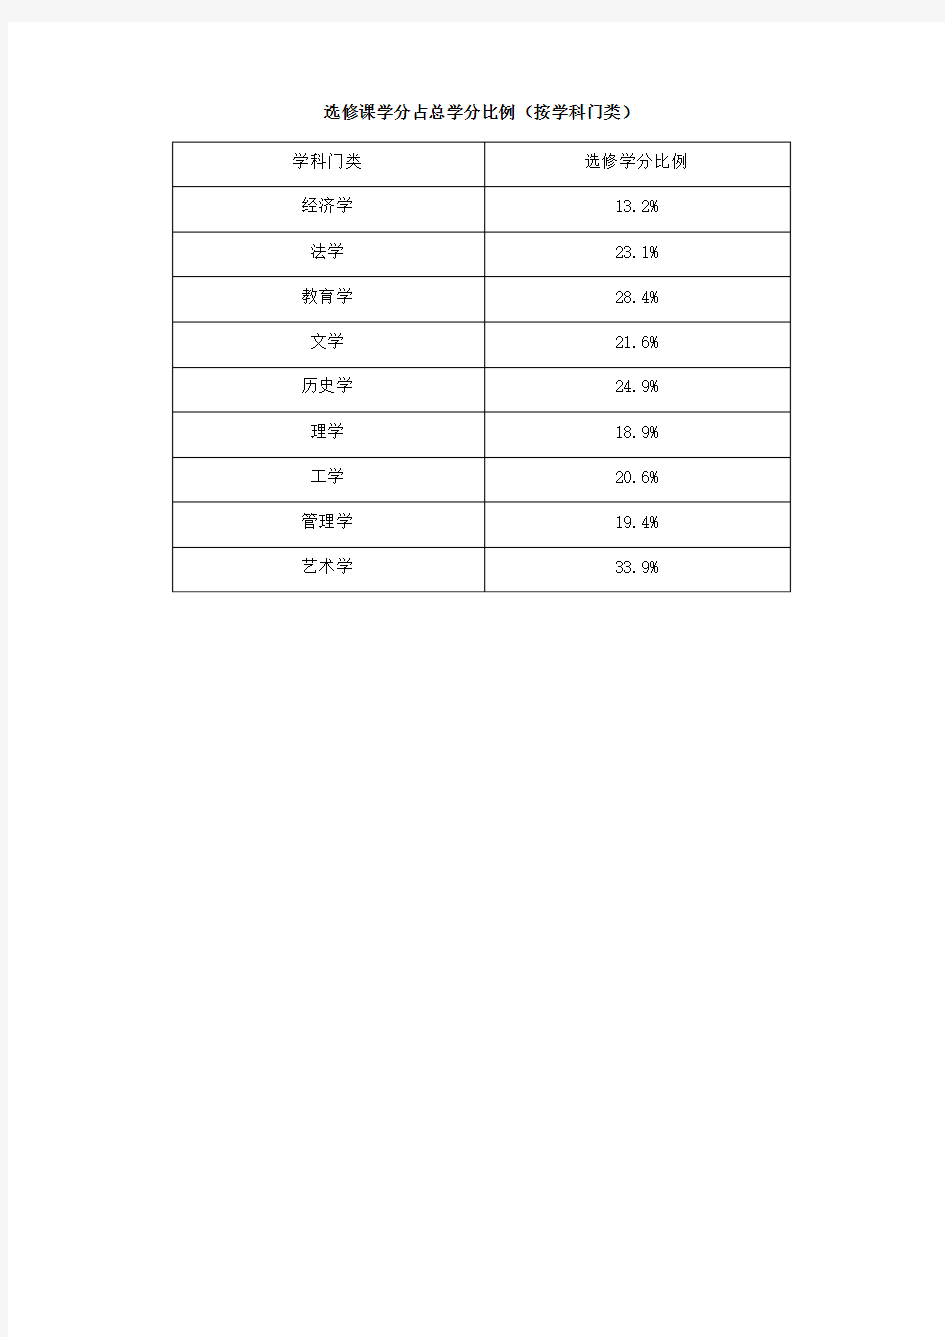 华南师范大学2013-2014选修课学分占总学分比例(按学科门类)